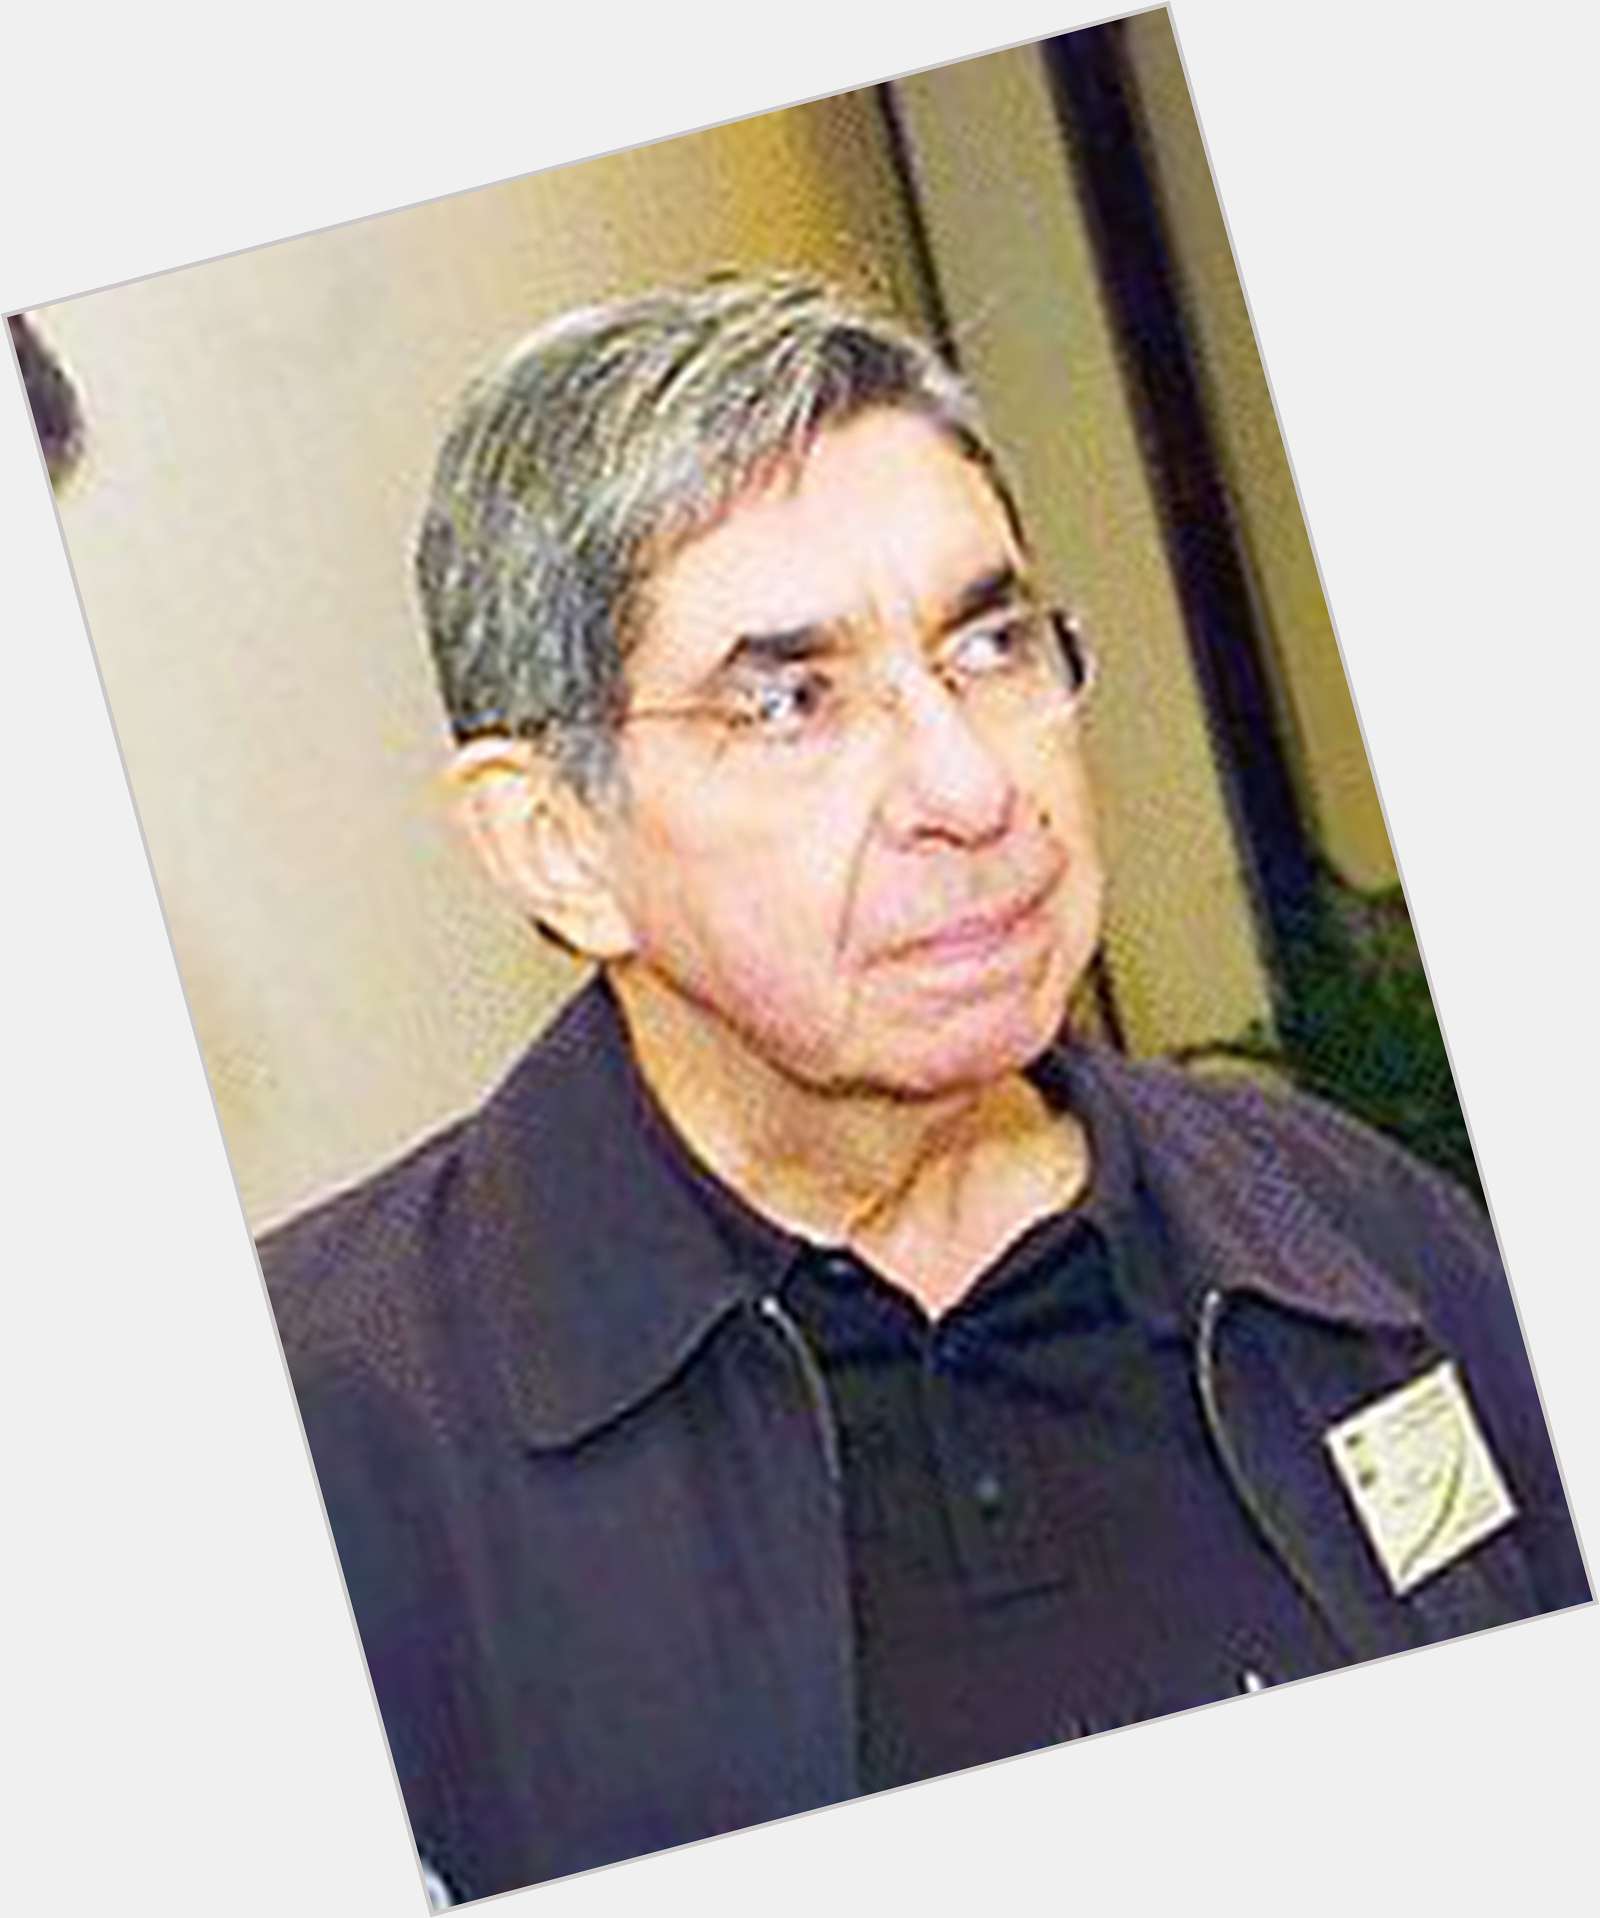 Oscar Arias hairstyle 3